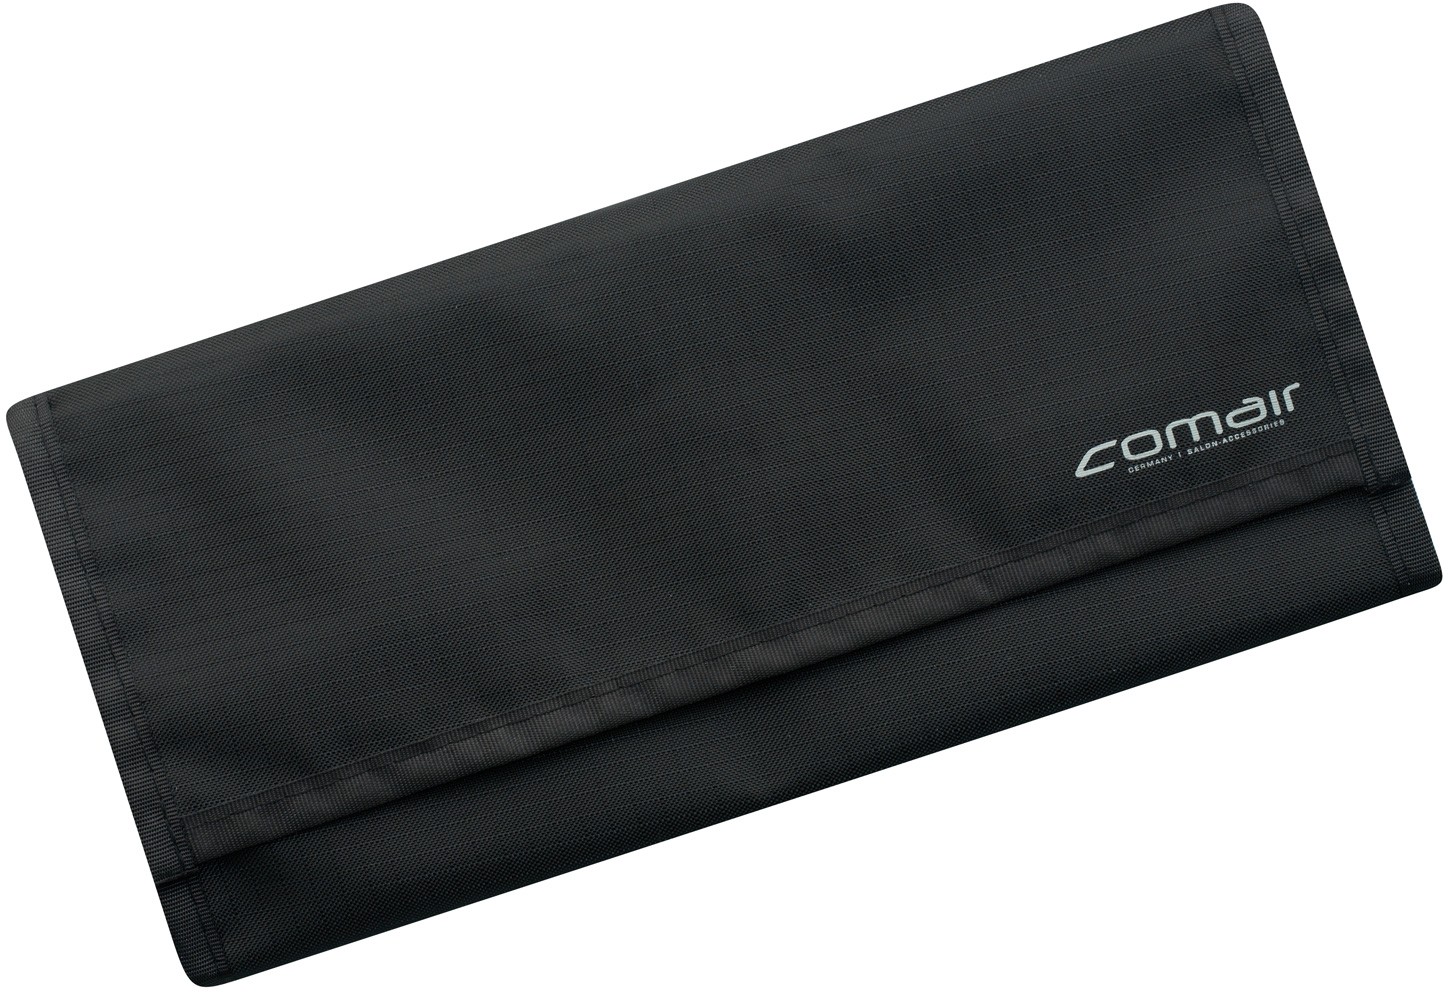  Comair Comb set Ionic static Free 